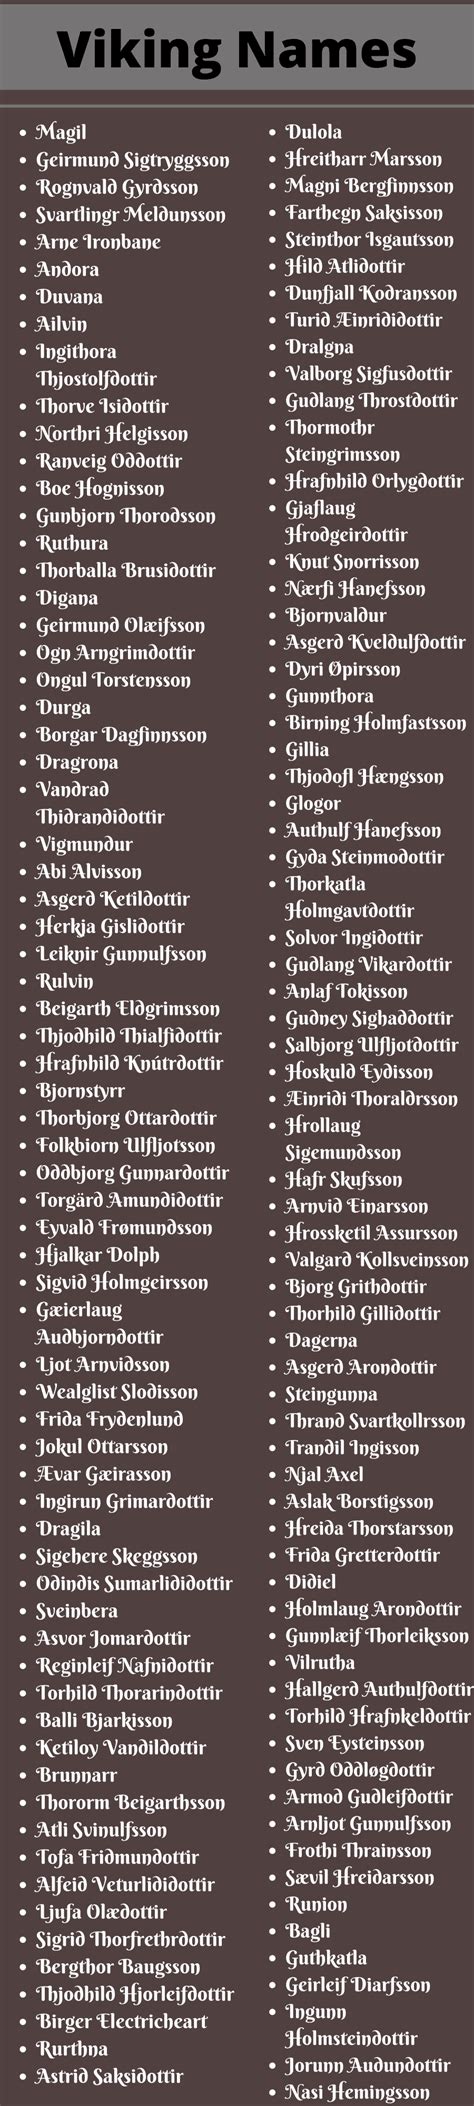 Viking Names 400 Cool And Catchy Viking Names